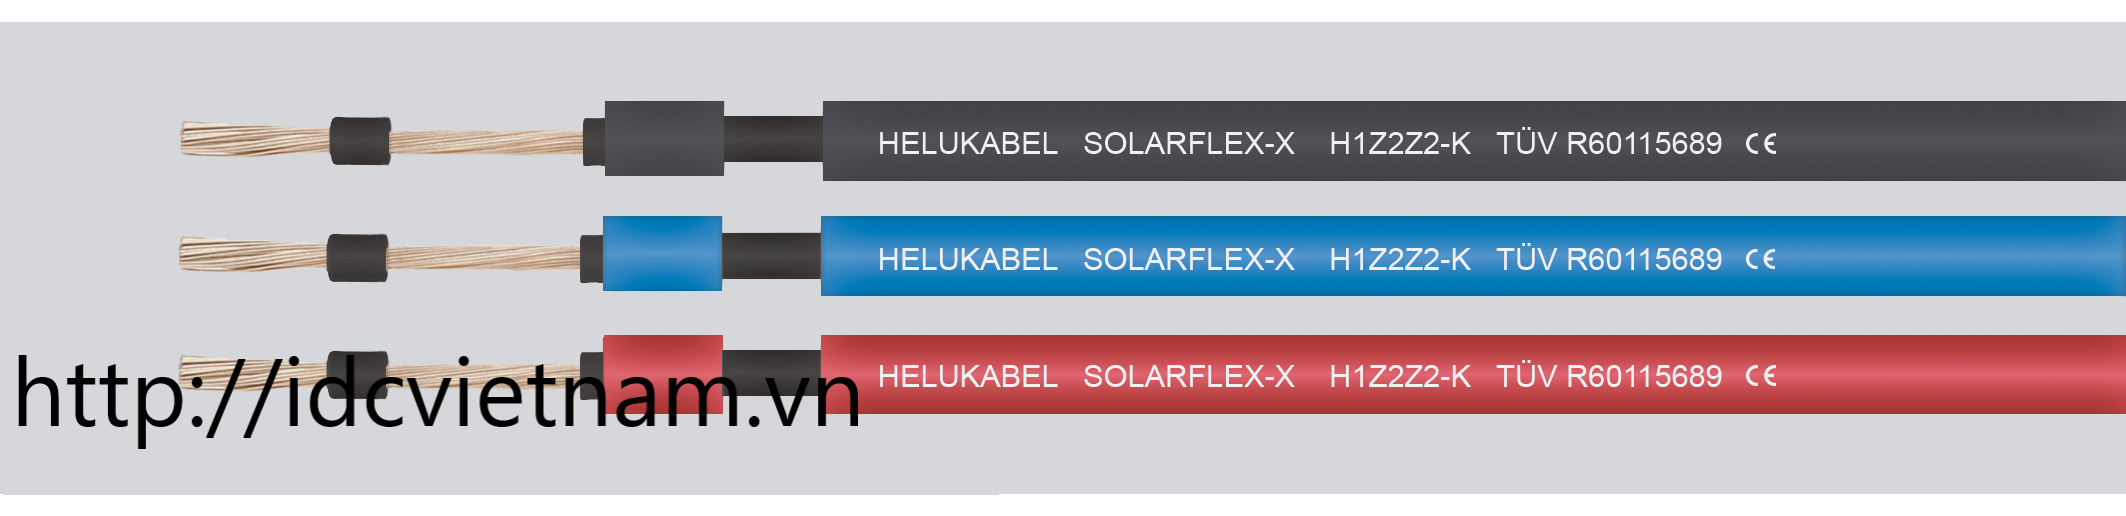 Helukabel SOLARFLEX-X H1Z2Z2-K 1x10 mm² RD (713571)